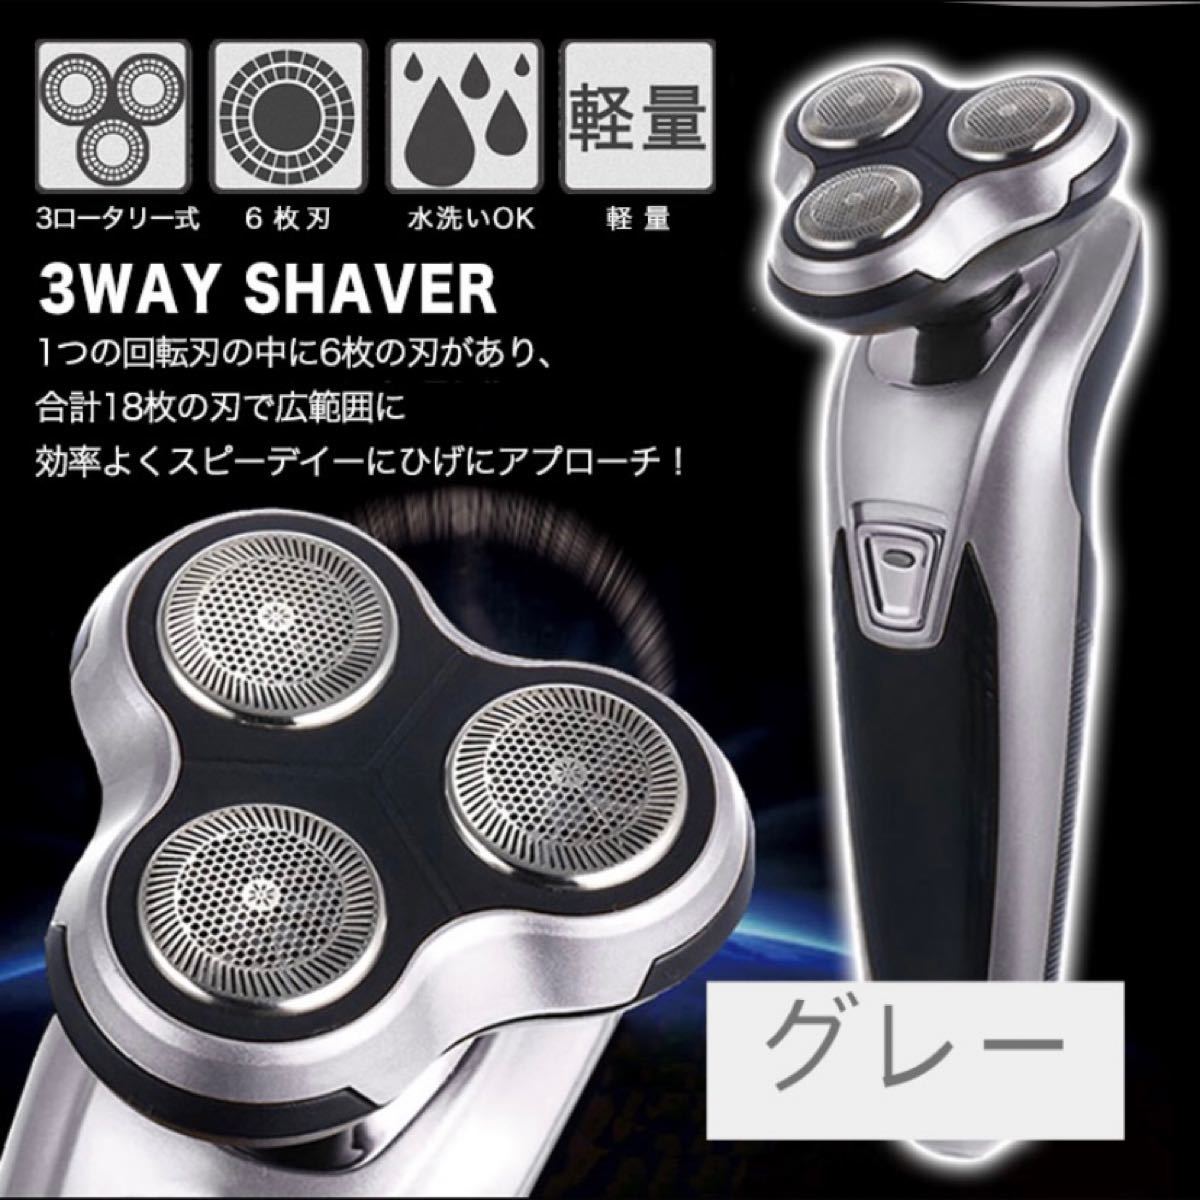 【新品・グレー】電気シェーバー 電気髭剃り 電動シェーバー 3way 6枚刃 水洗い可 メンズ 水洗い可能 軽量 プレゼント